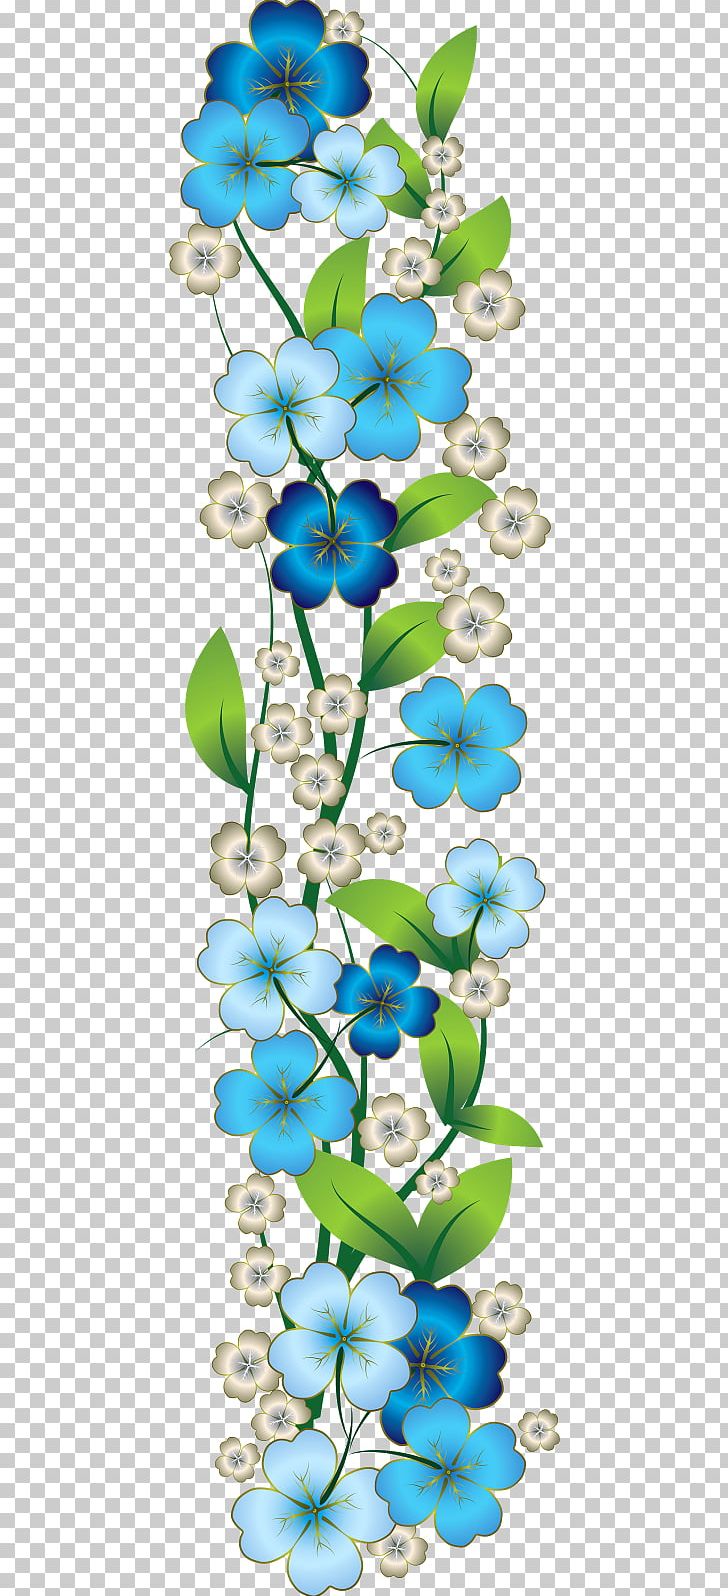 Blue Rose Flower PNG, Clipart, Blue, Blue Flower, Blue Rose, Branch, Clip Art Free PNG Download